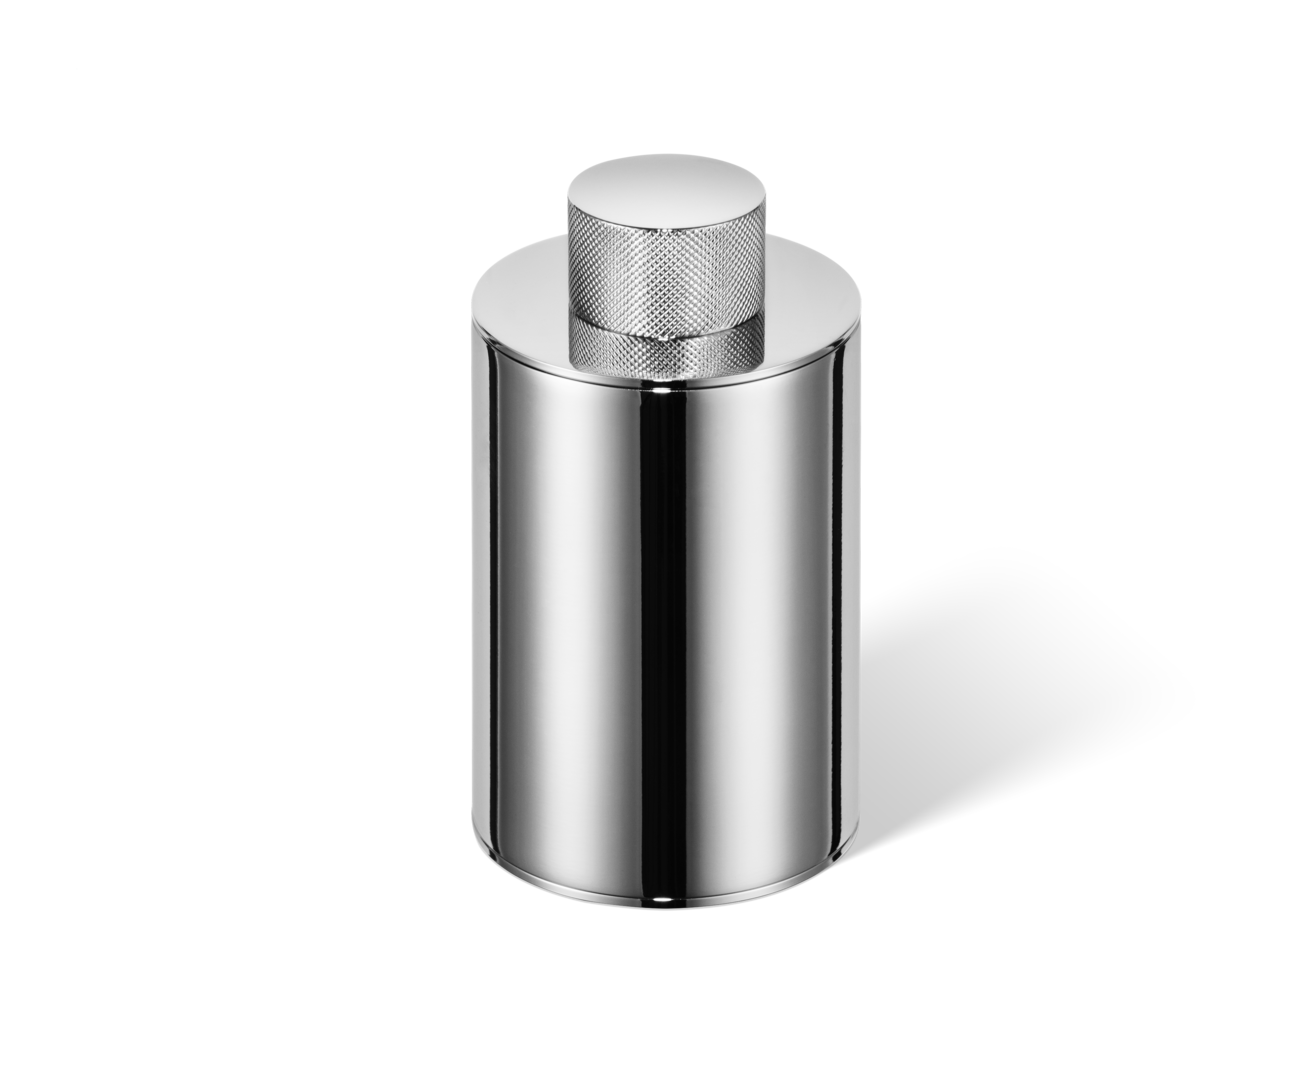 Chrom Luxus-Utensilienbehälter für Wattepads und Wattestäbchen von Decor Walther, bietet edles Design und praktische Aufbewahrung für das moderne Badezimmer.